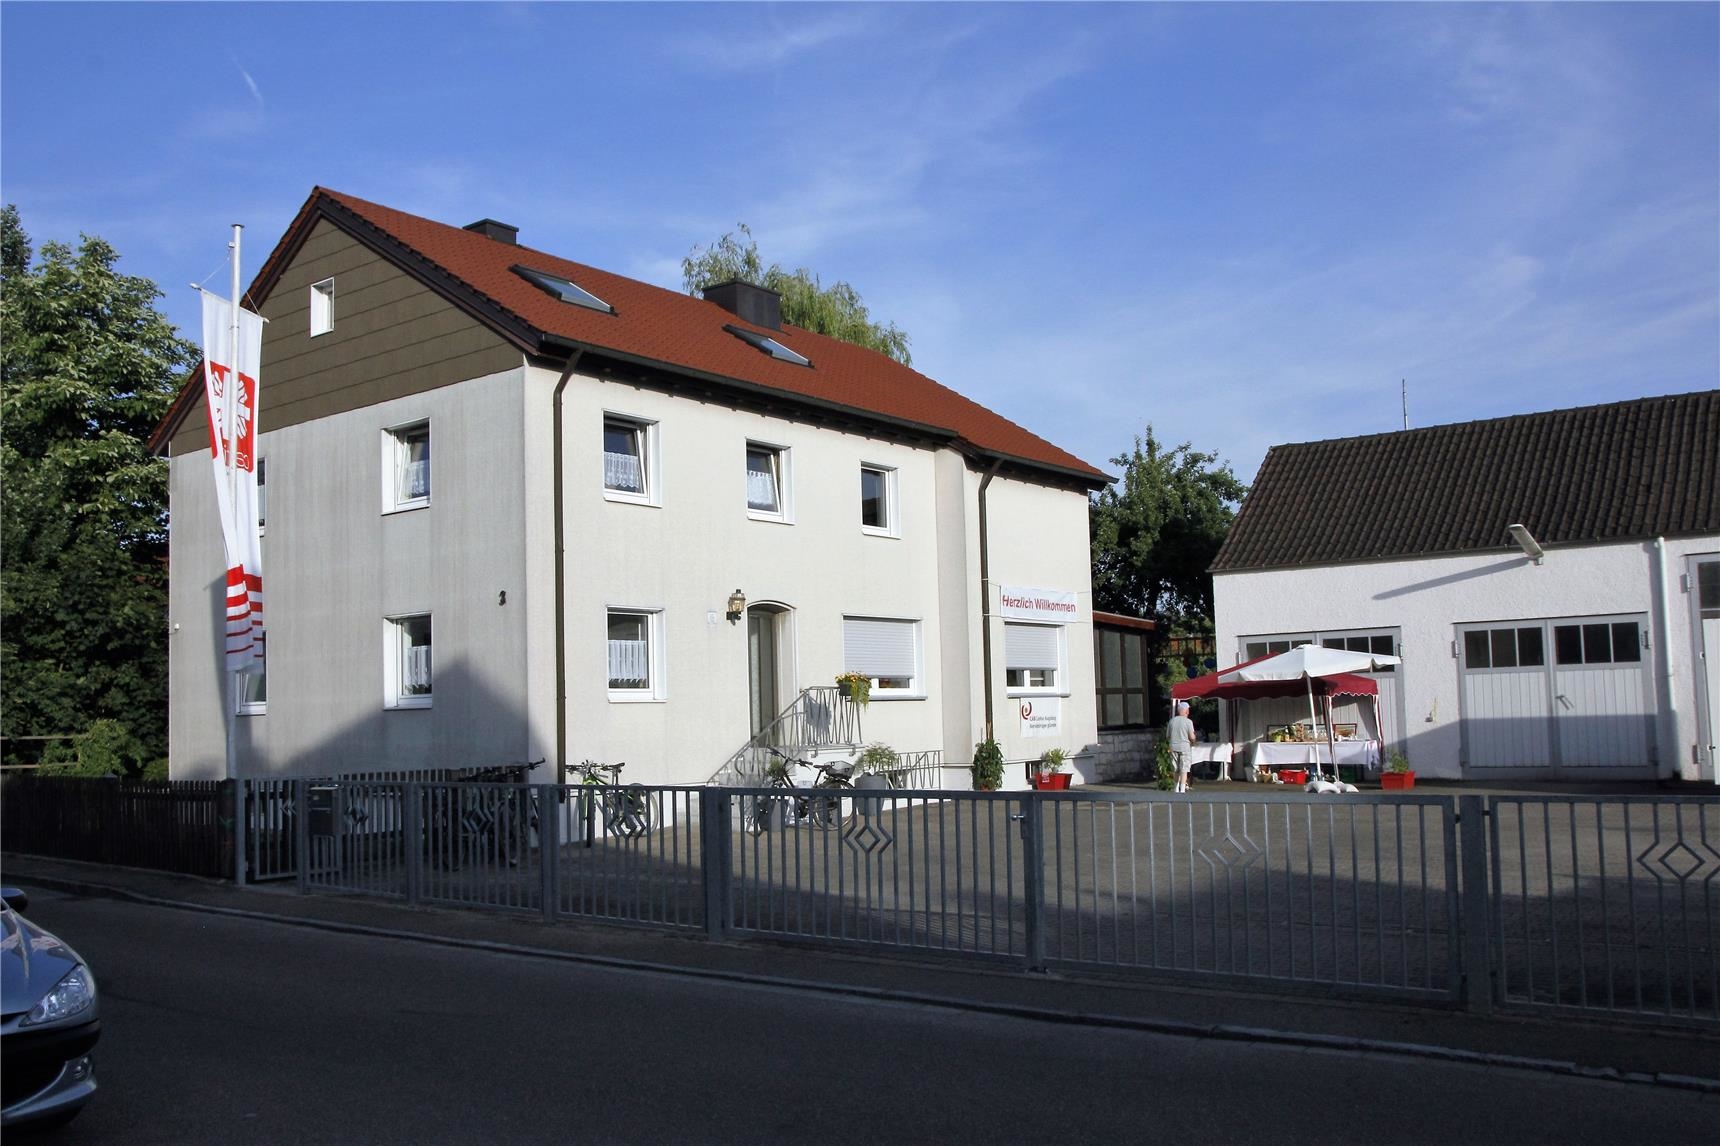 Die Wohneinrichtung der CAB Caritas Augsburg Betriebsträger gGmbH – Behindertenhilfe in Gundelfingen an der Brenzer Straße. (Bernhard Gattner)